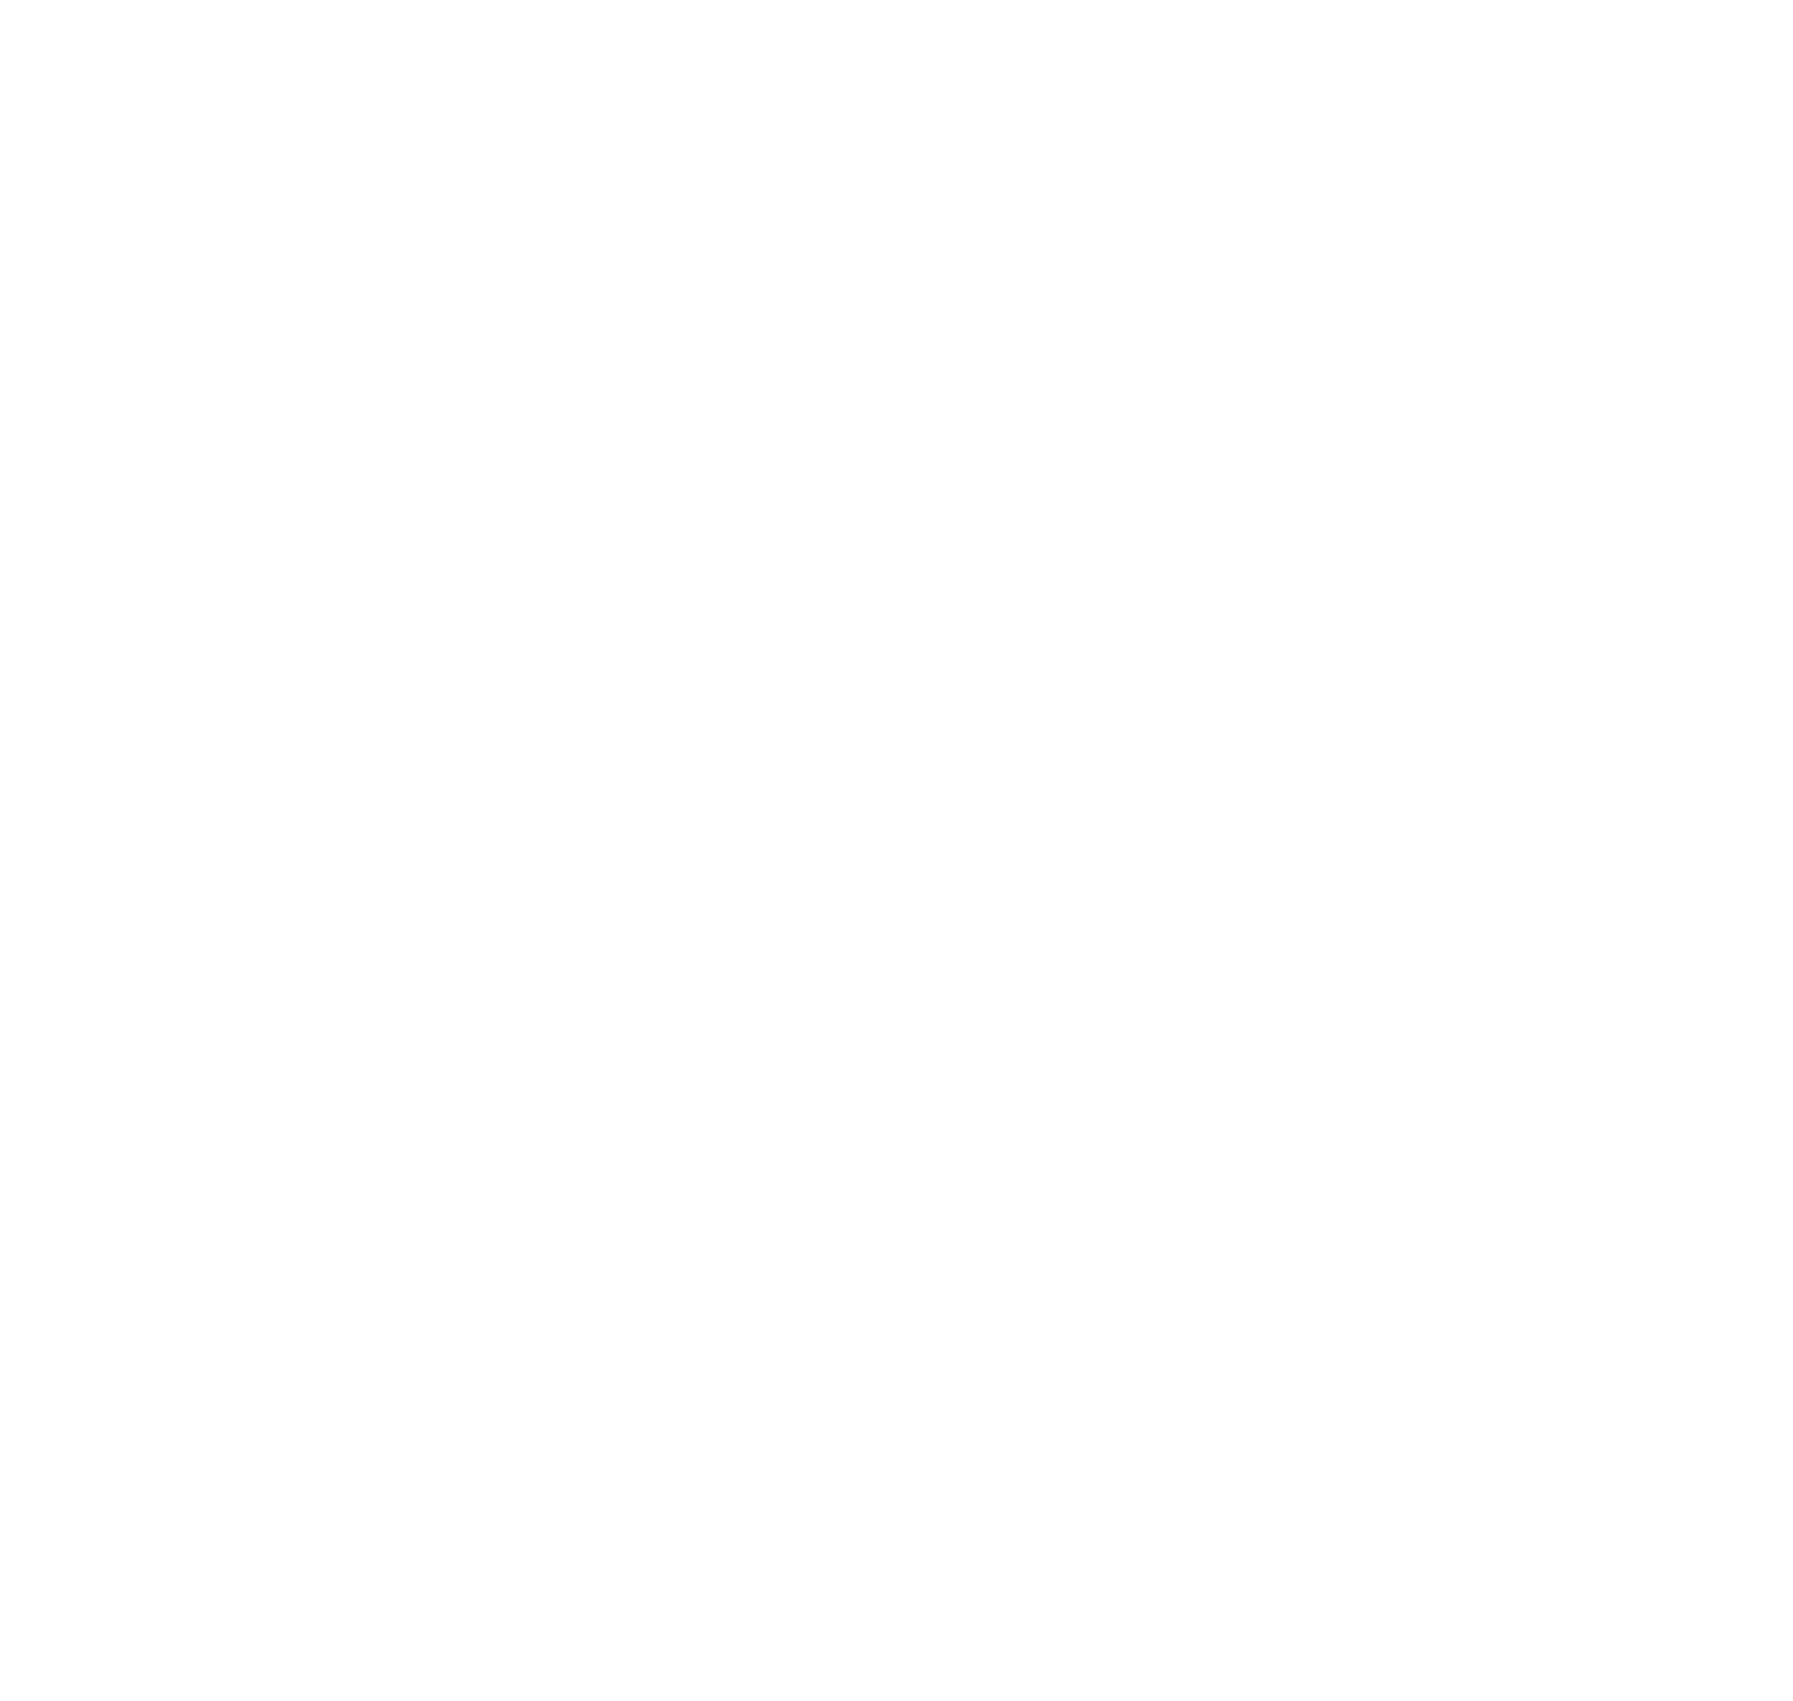 Bolton Scouts